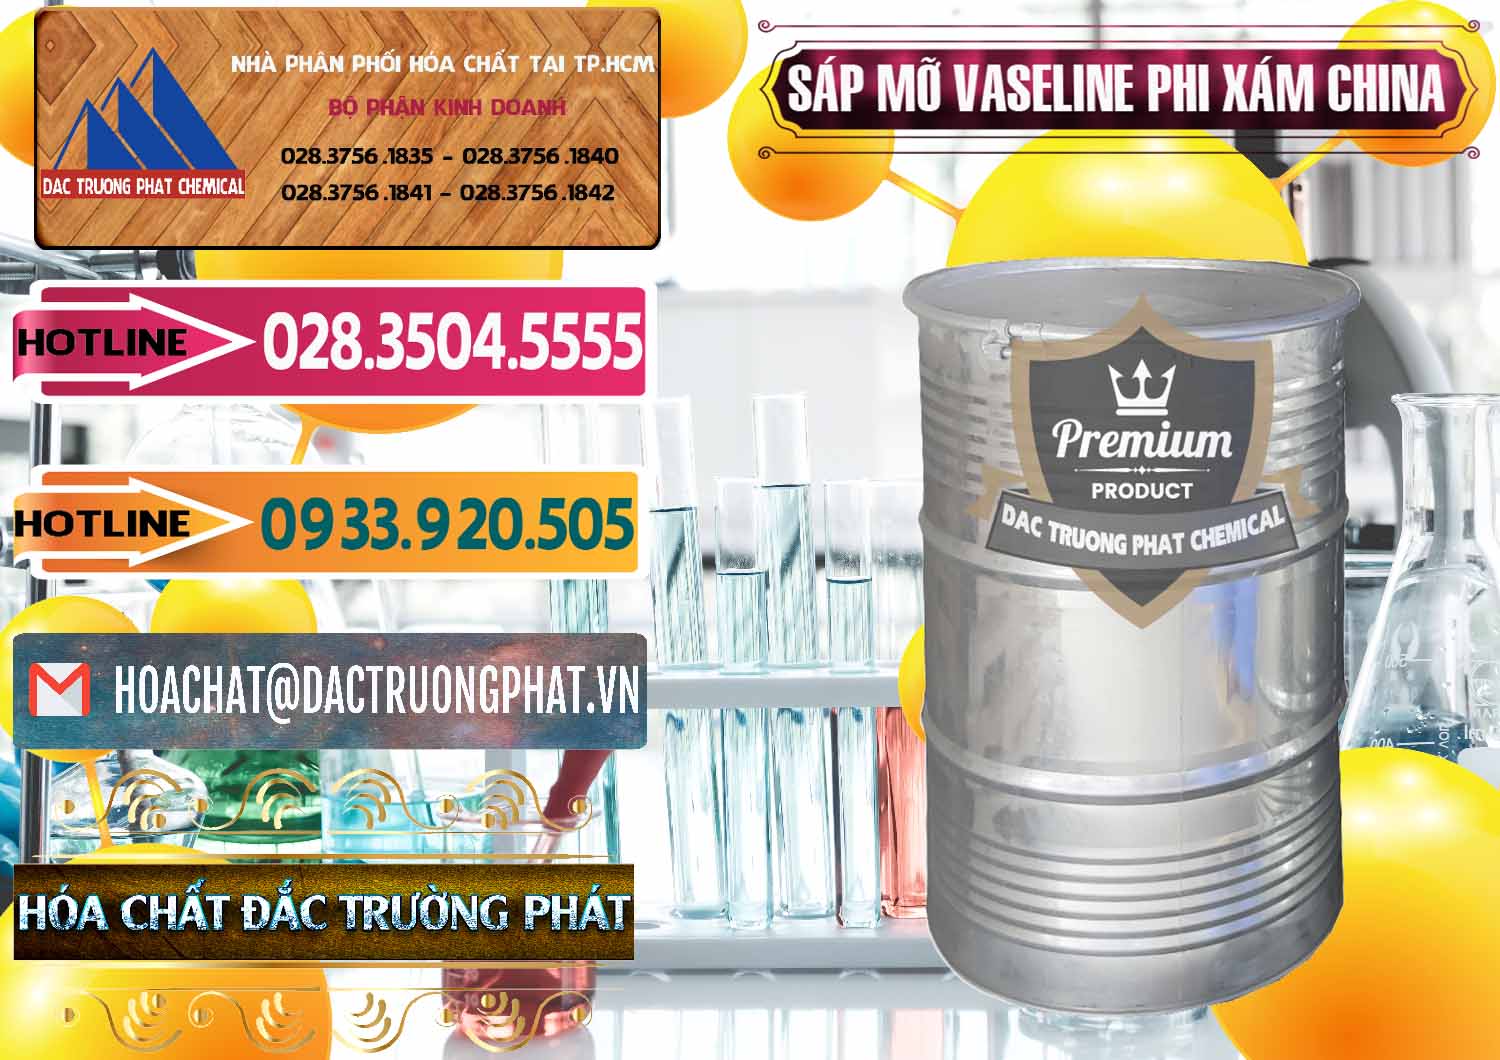 Cty cung cấp - bán Sáp Mỡ Vaseline Phi Xám Trung Quốc China - 0291 - Cty chuyên kinh doanh ( cung cấp ) hóa chất tại TP.HCM - dactruongphat.vn